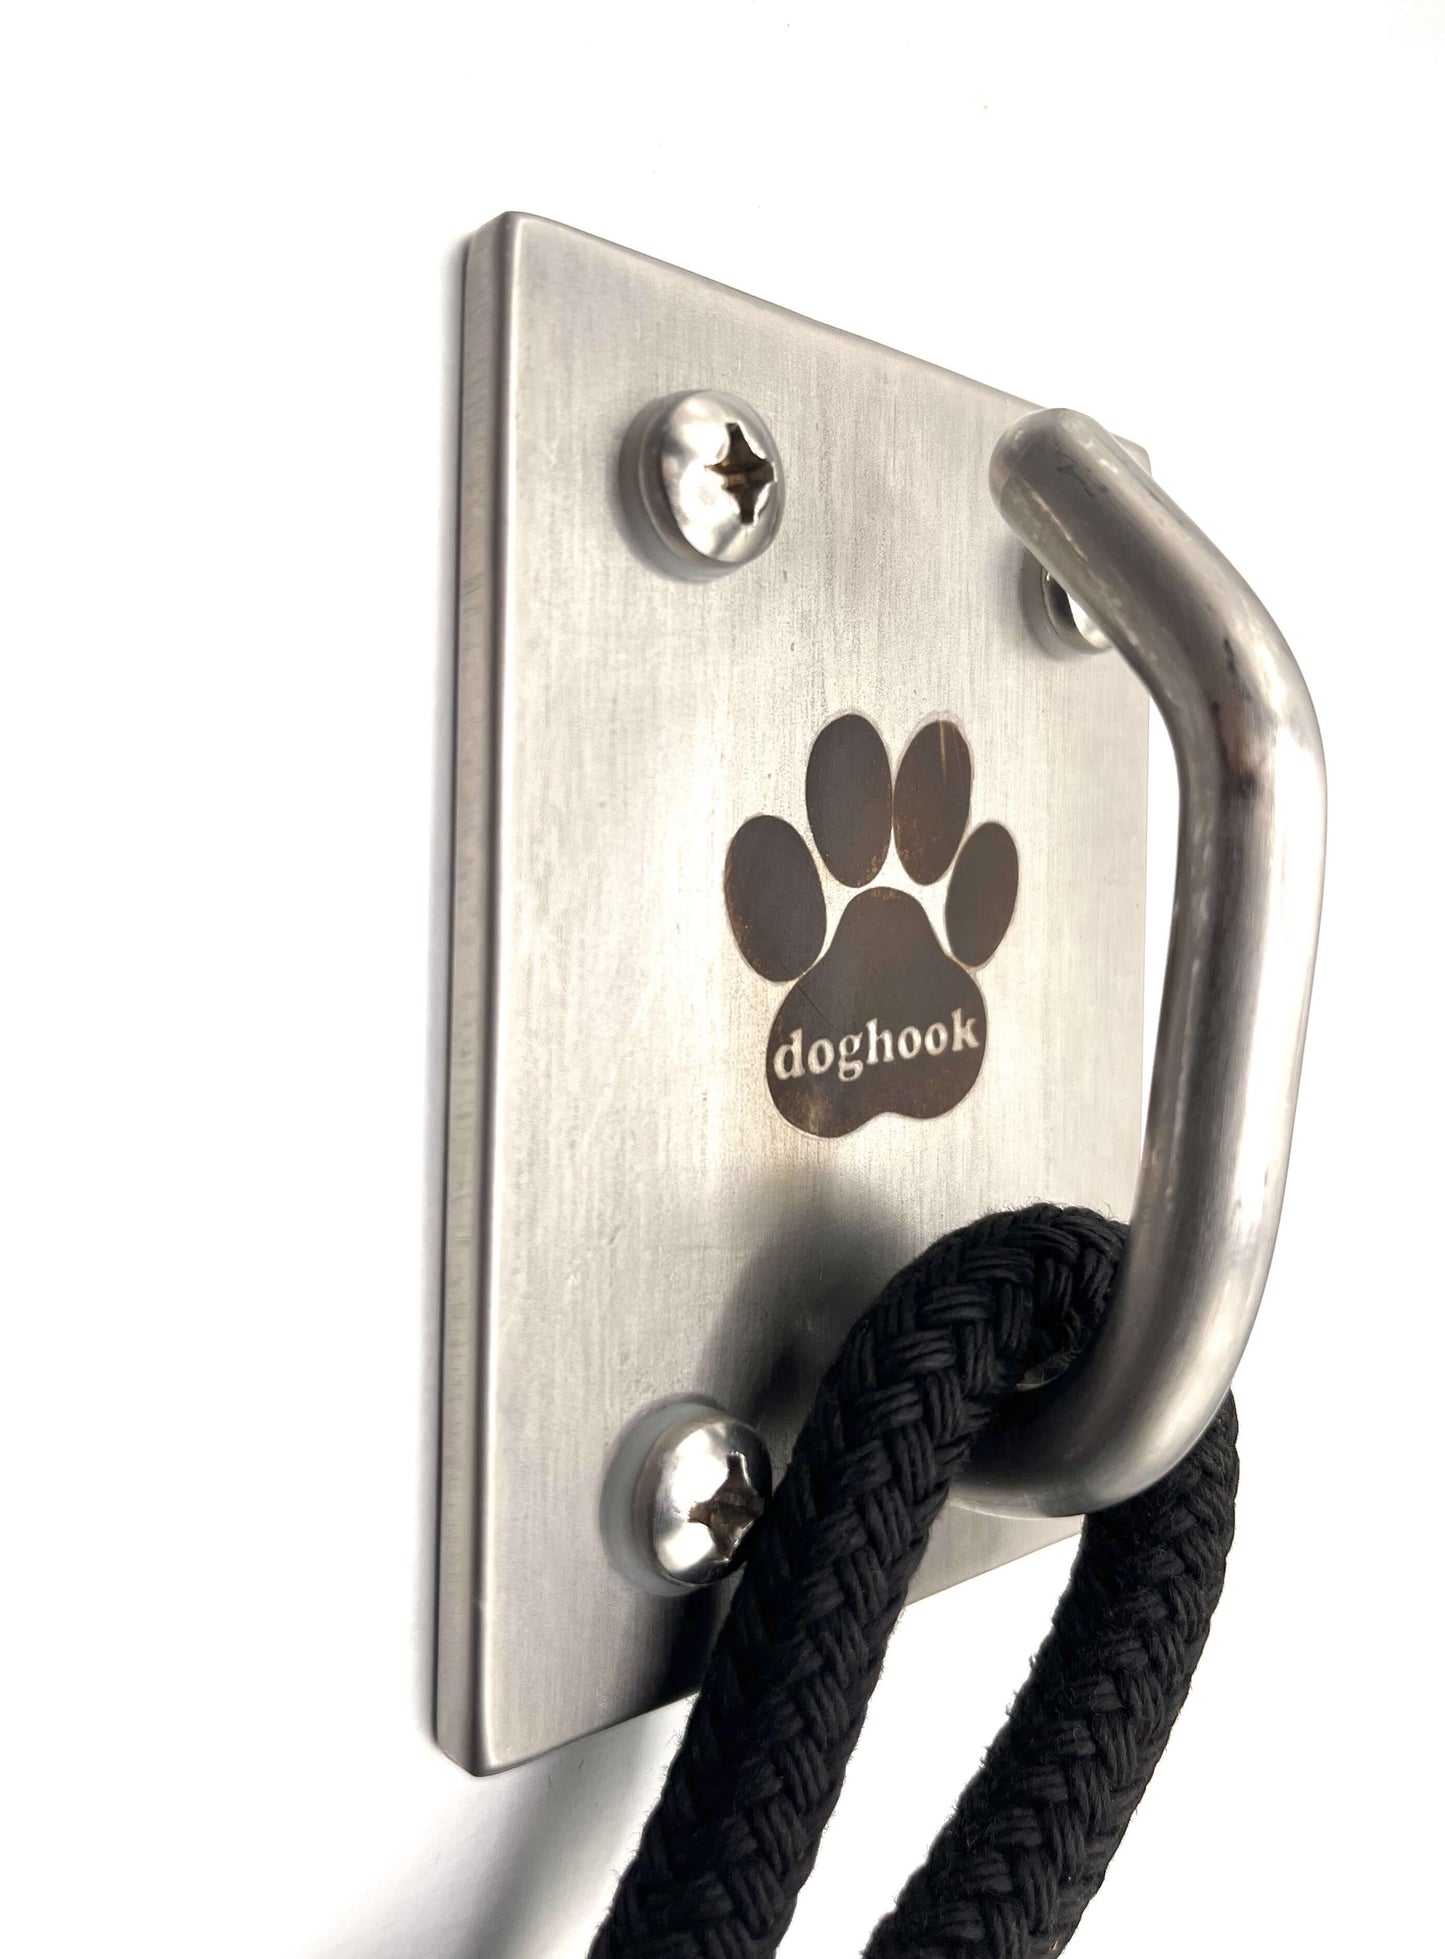 ultimate dog hook - doghook - leash on hook - leash on doghook - product shot - leash shot